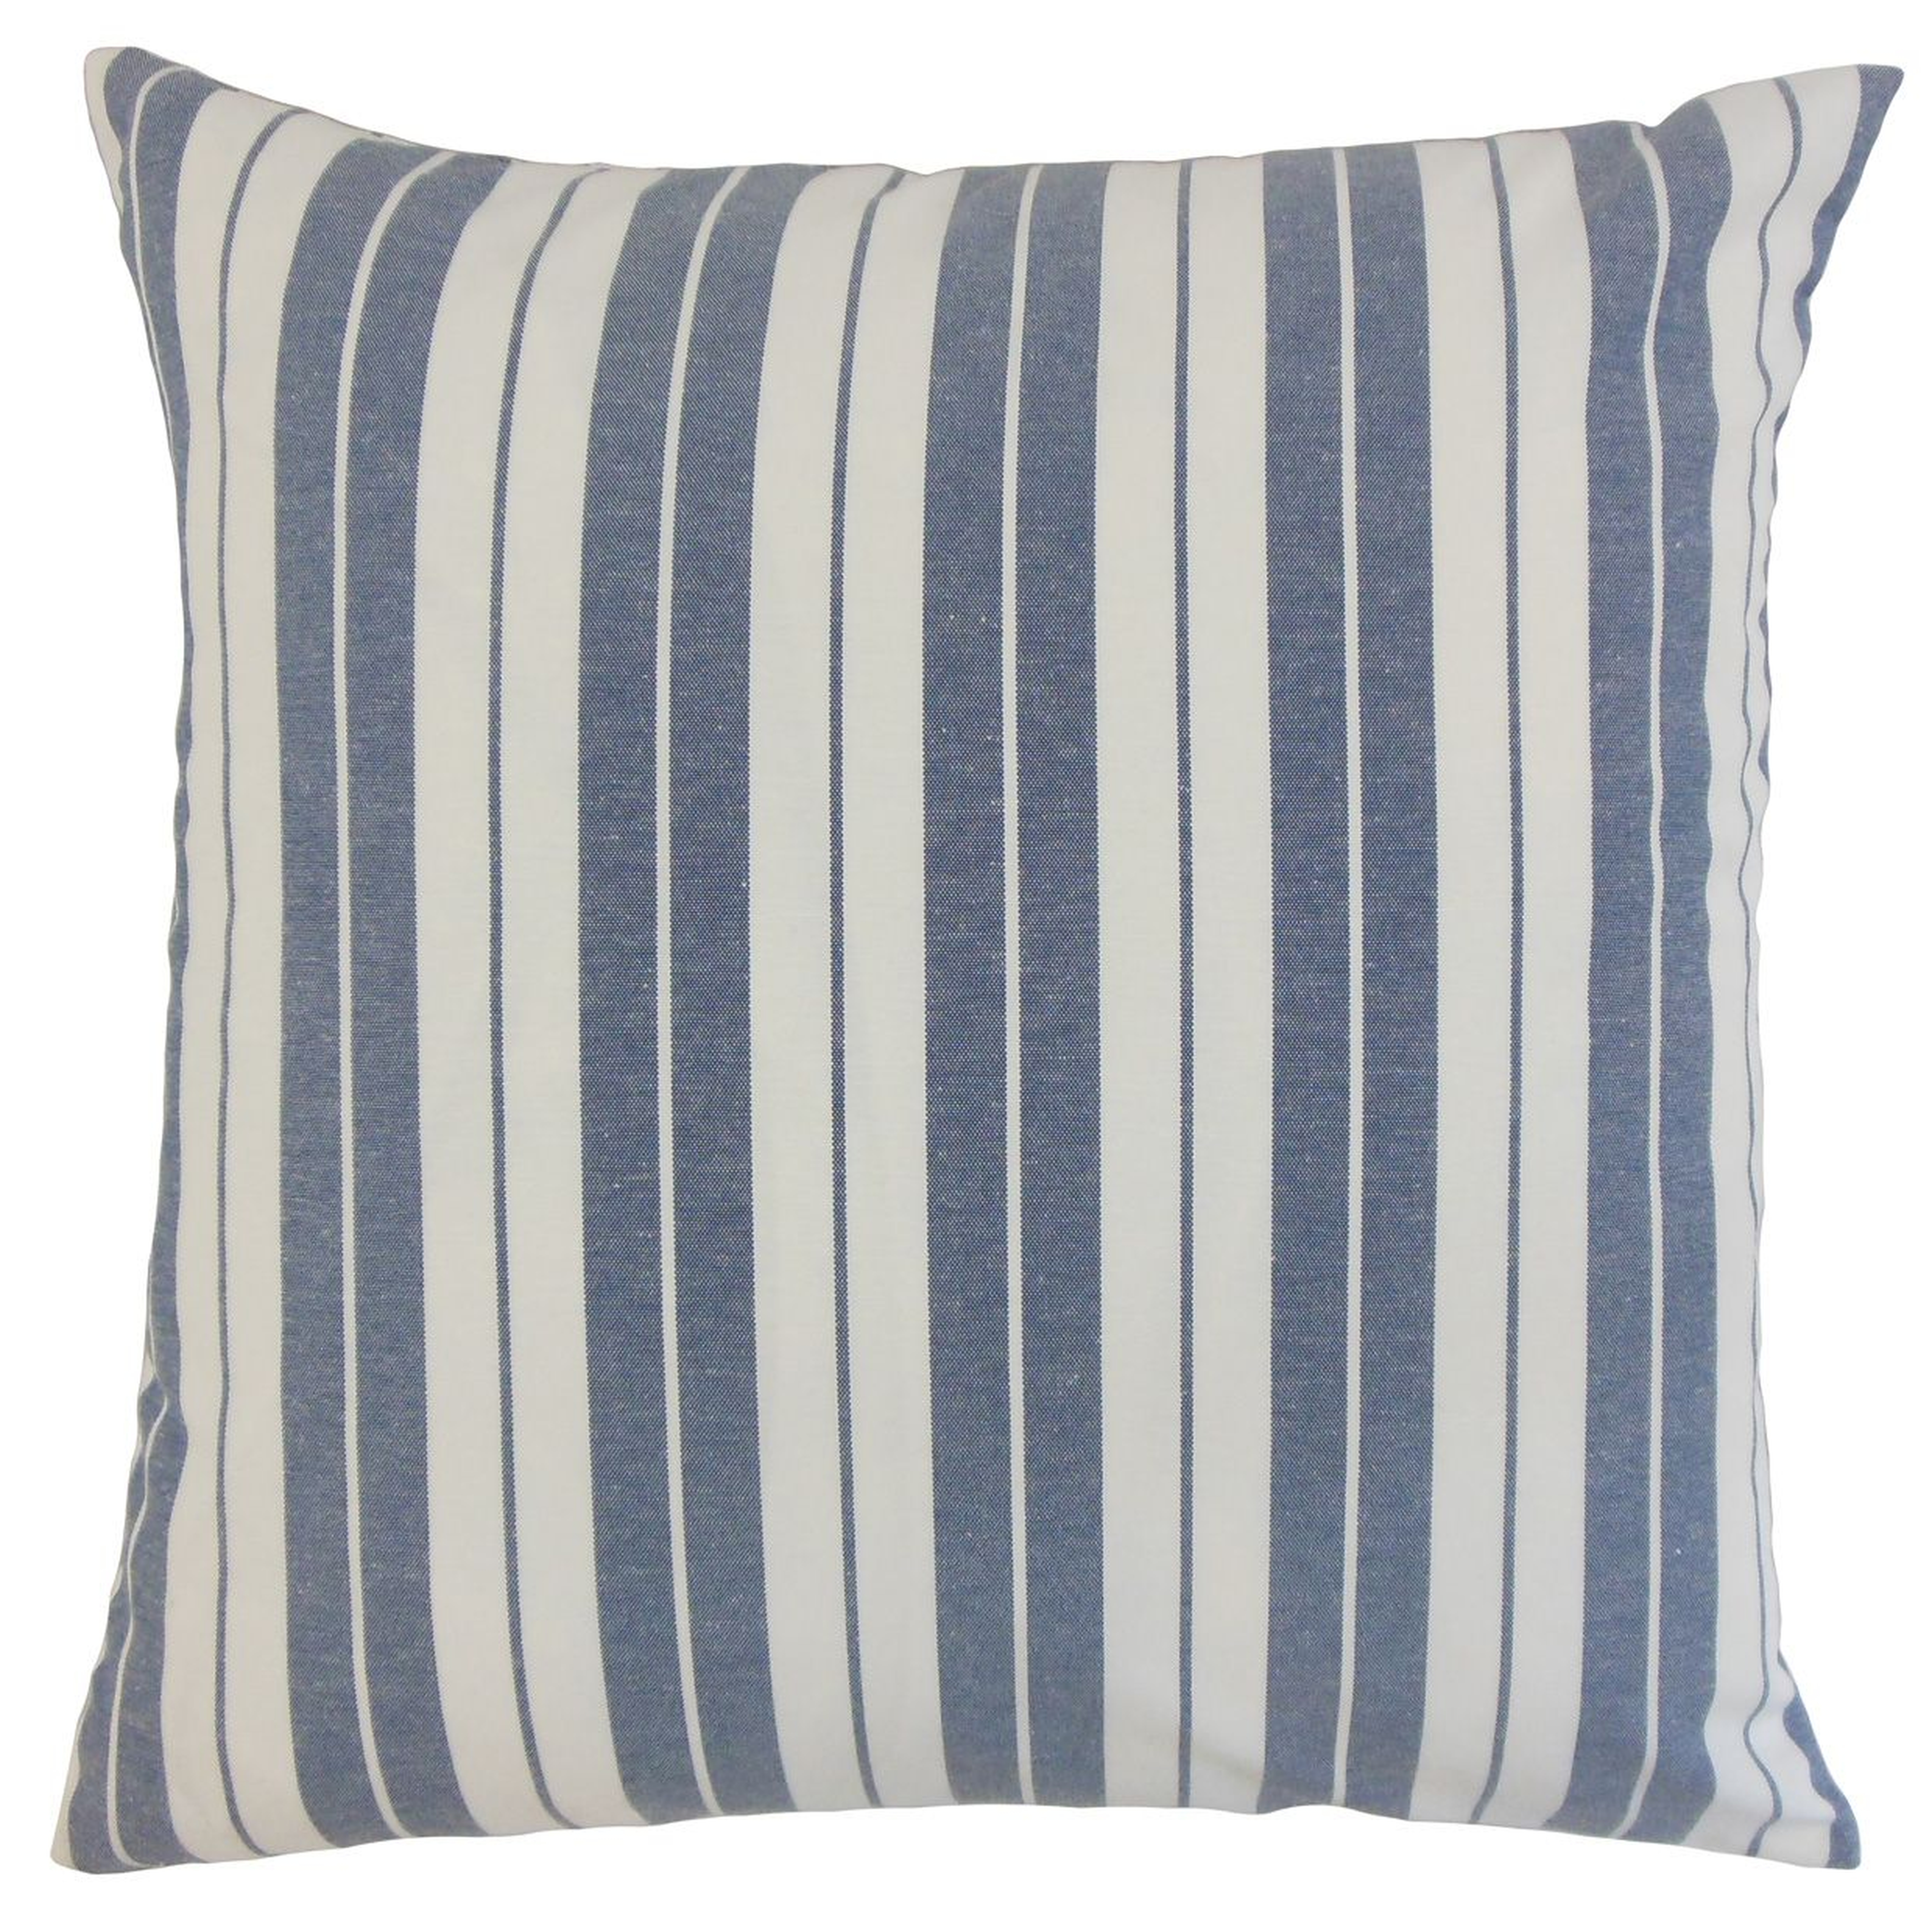 Henley Stripe Pillow, Navy, 18" x 18" - Havenly Essentials